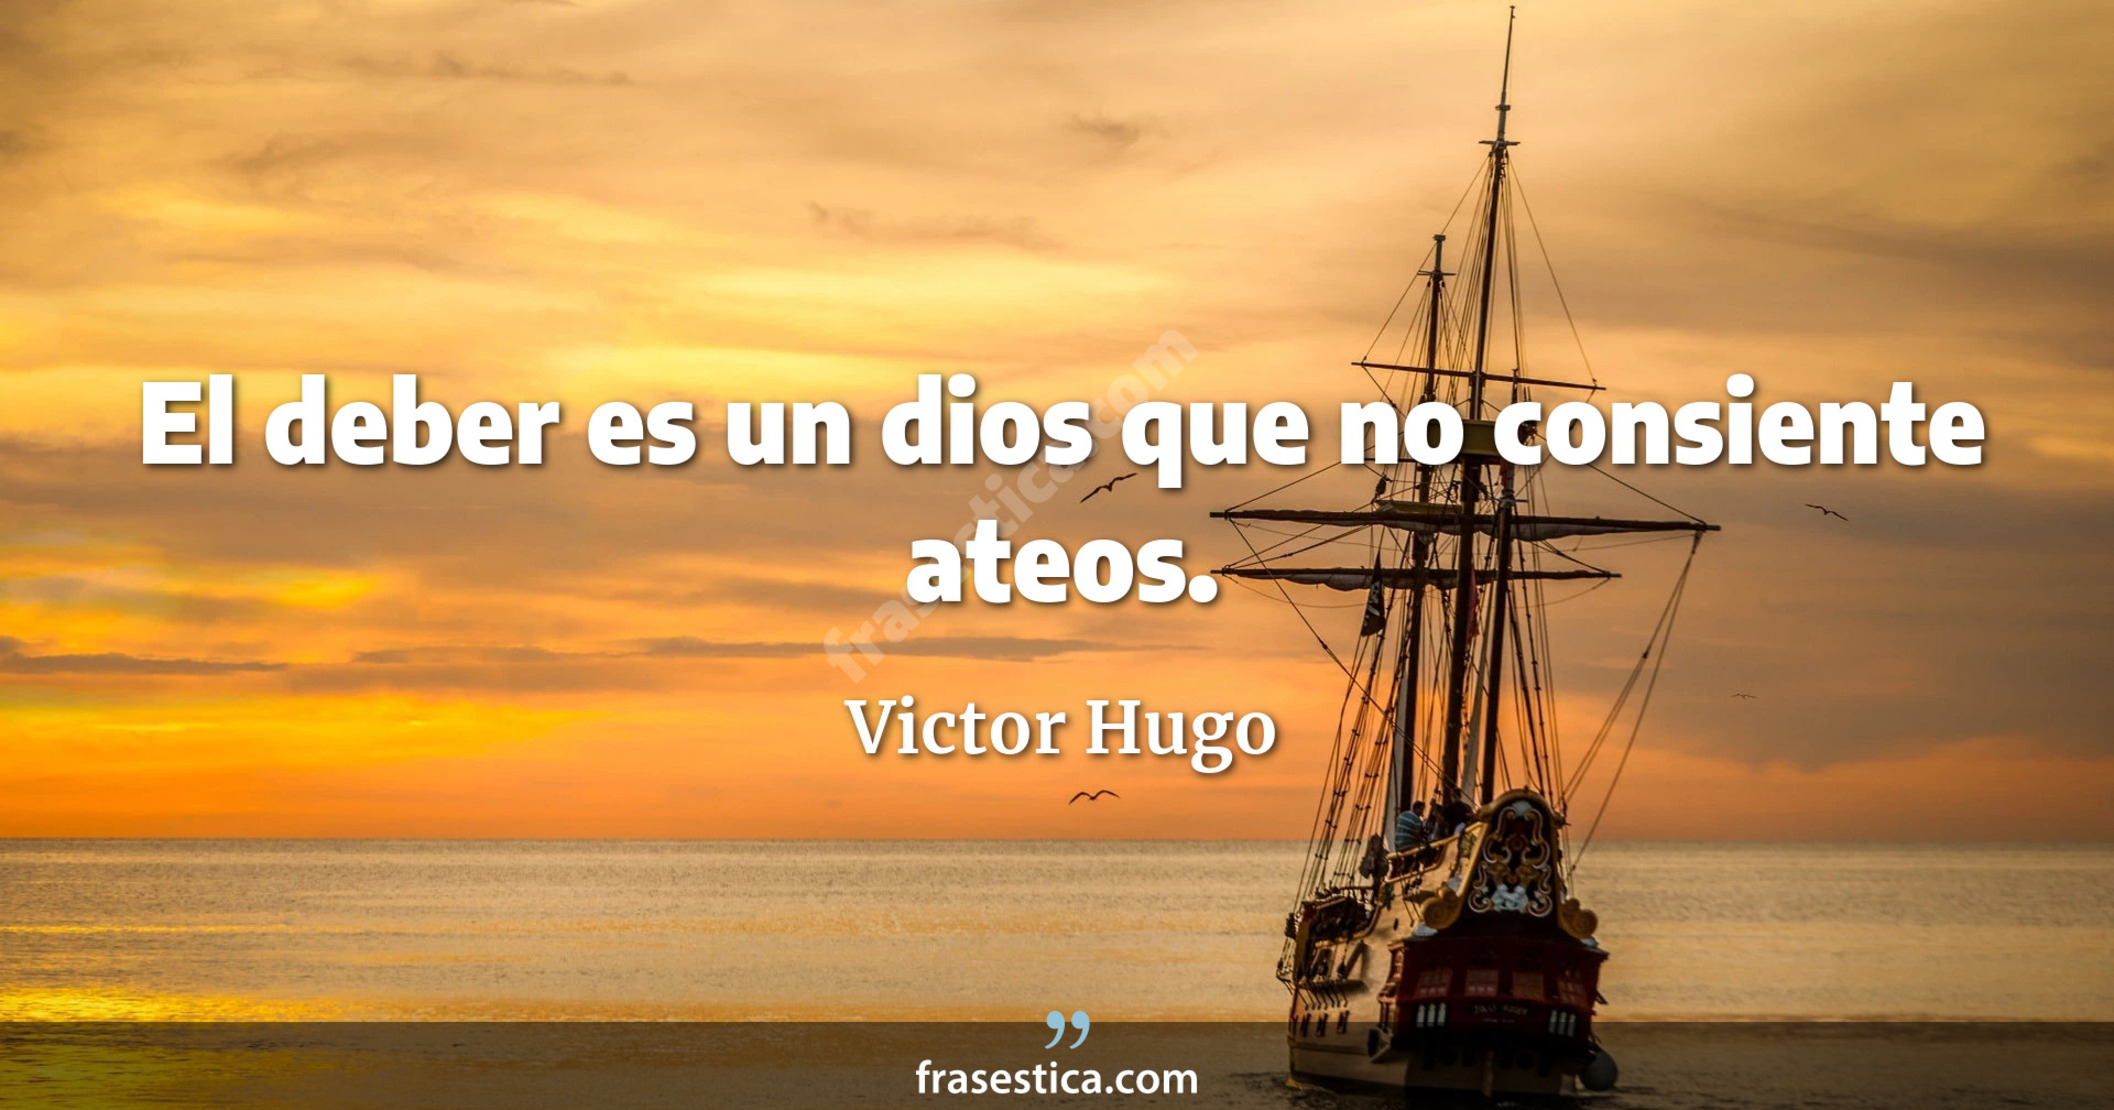 El deber es un dios que no consiente ateos. - Victor Hugo